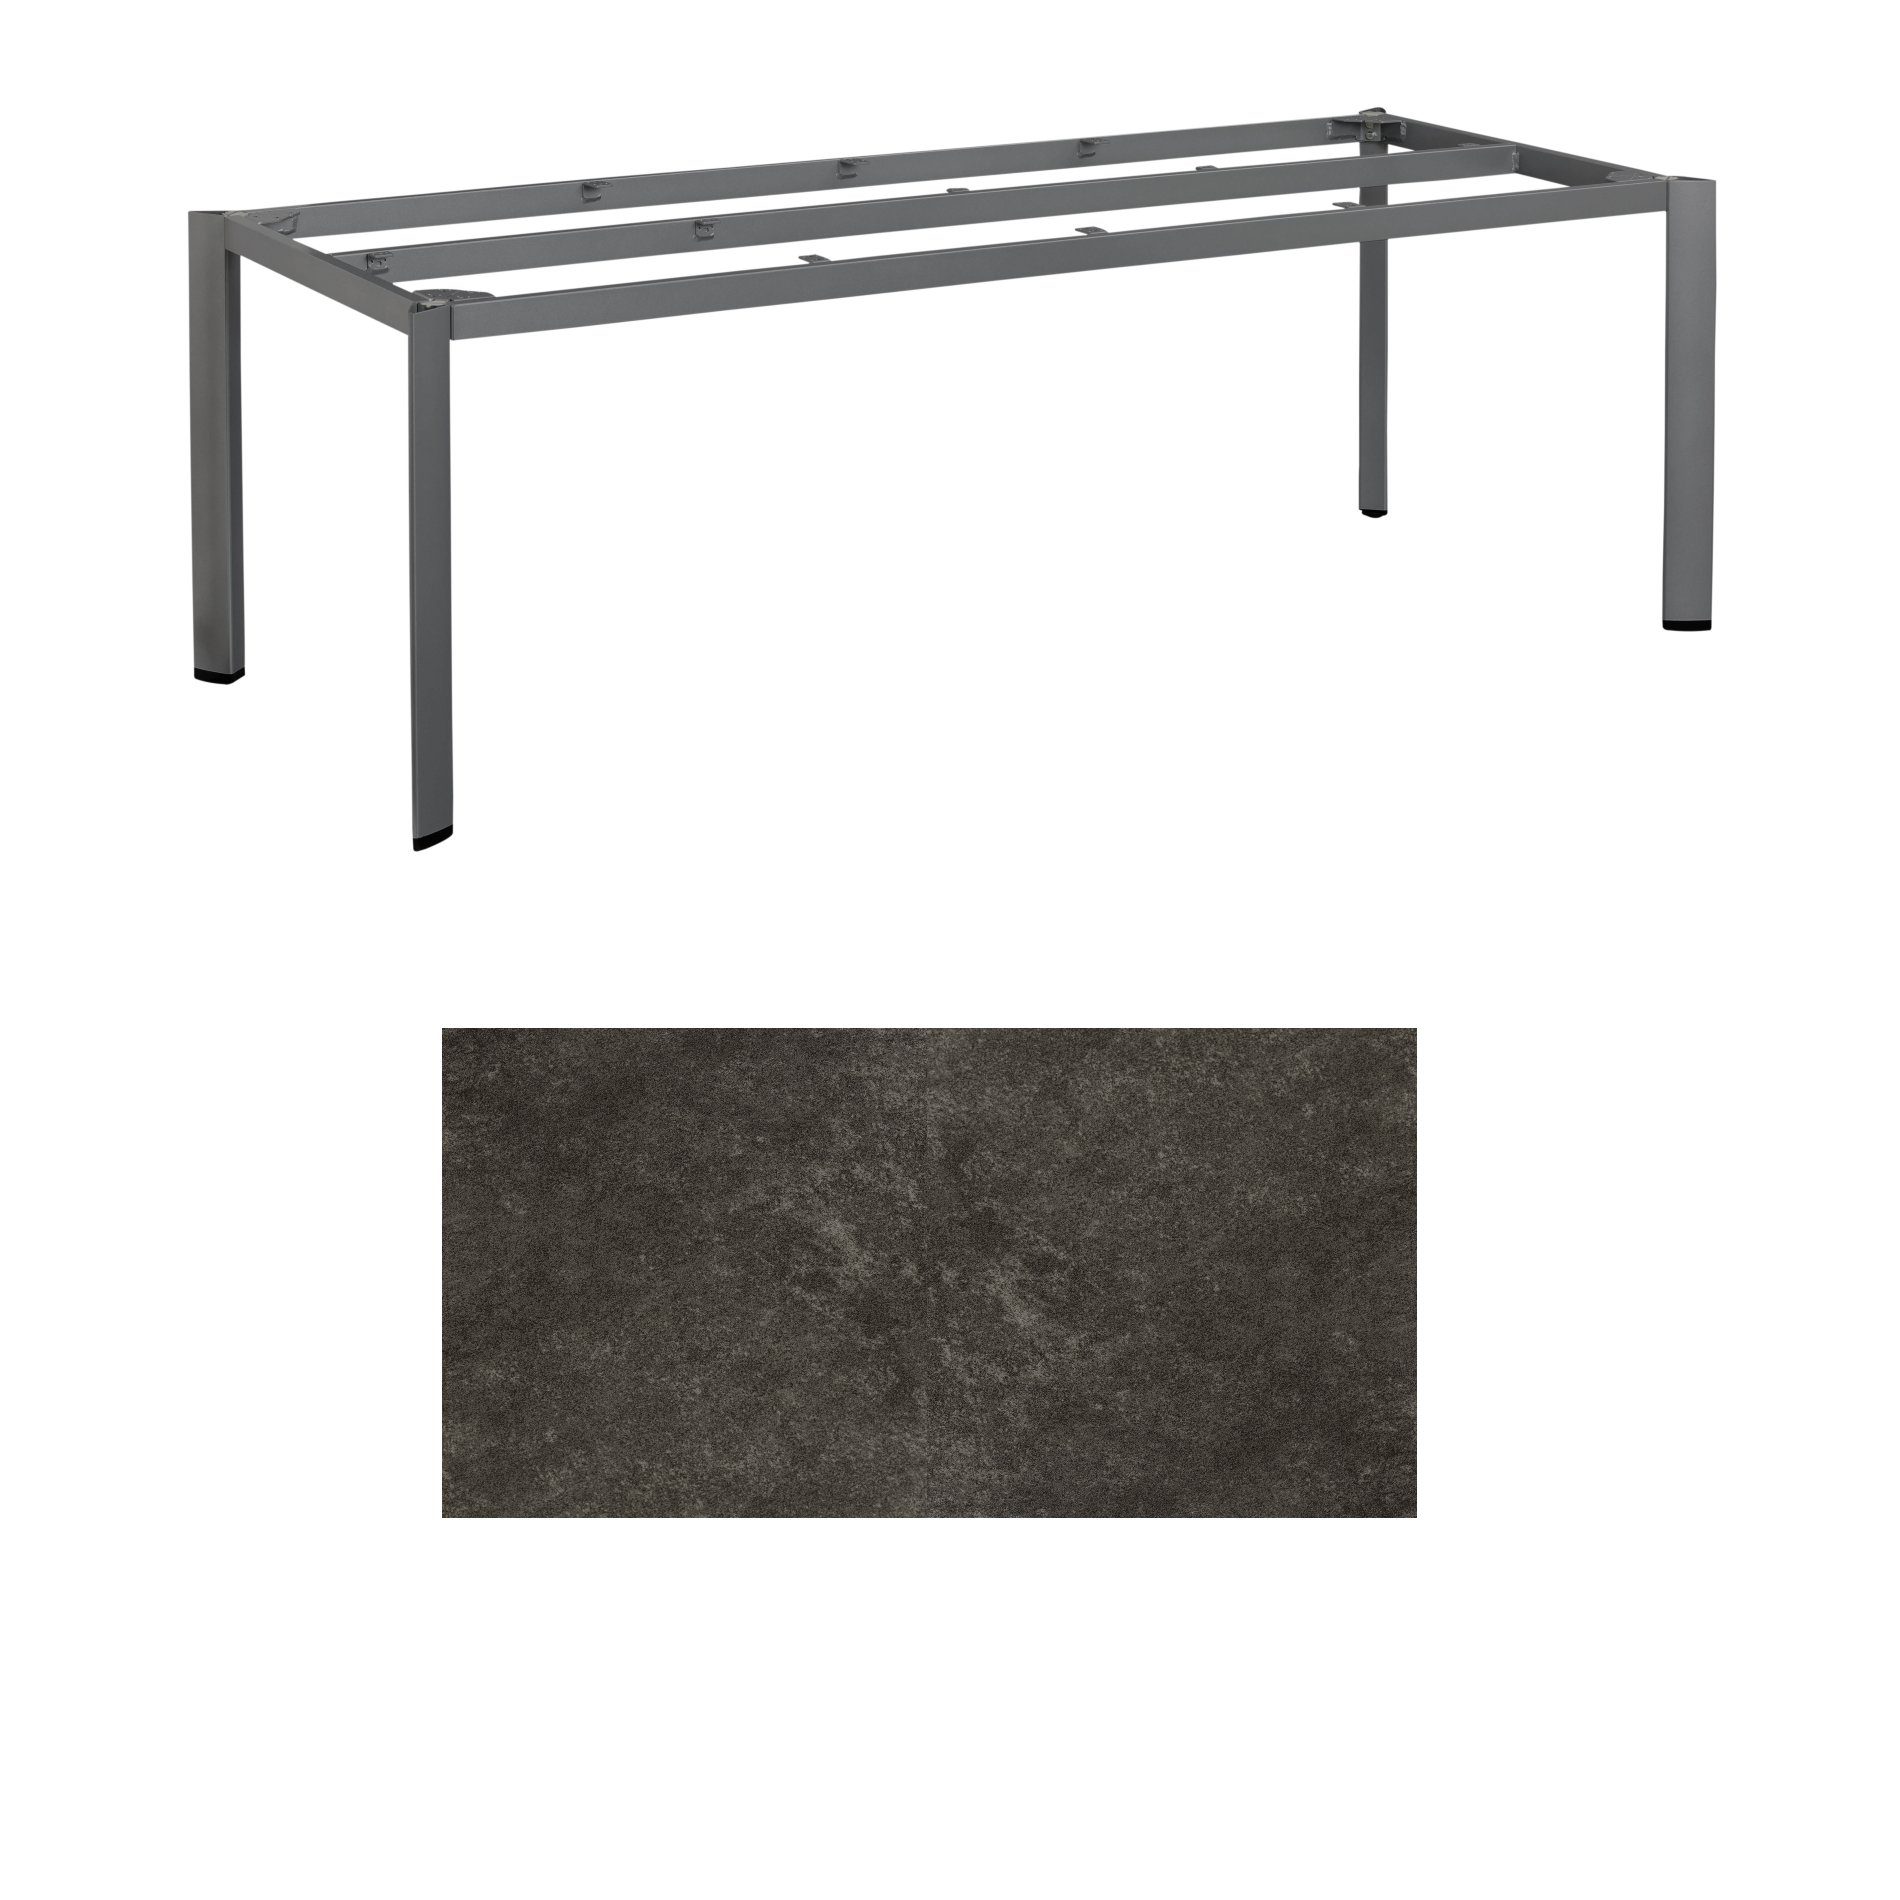 Kettler Gartentisch, Tischgestell 220x95cm "Edge", Aluminium eisengrau, mit Tischplatte Keramik anthrazit